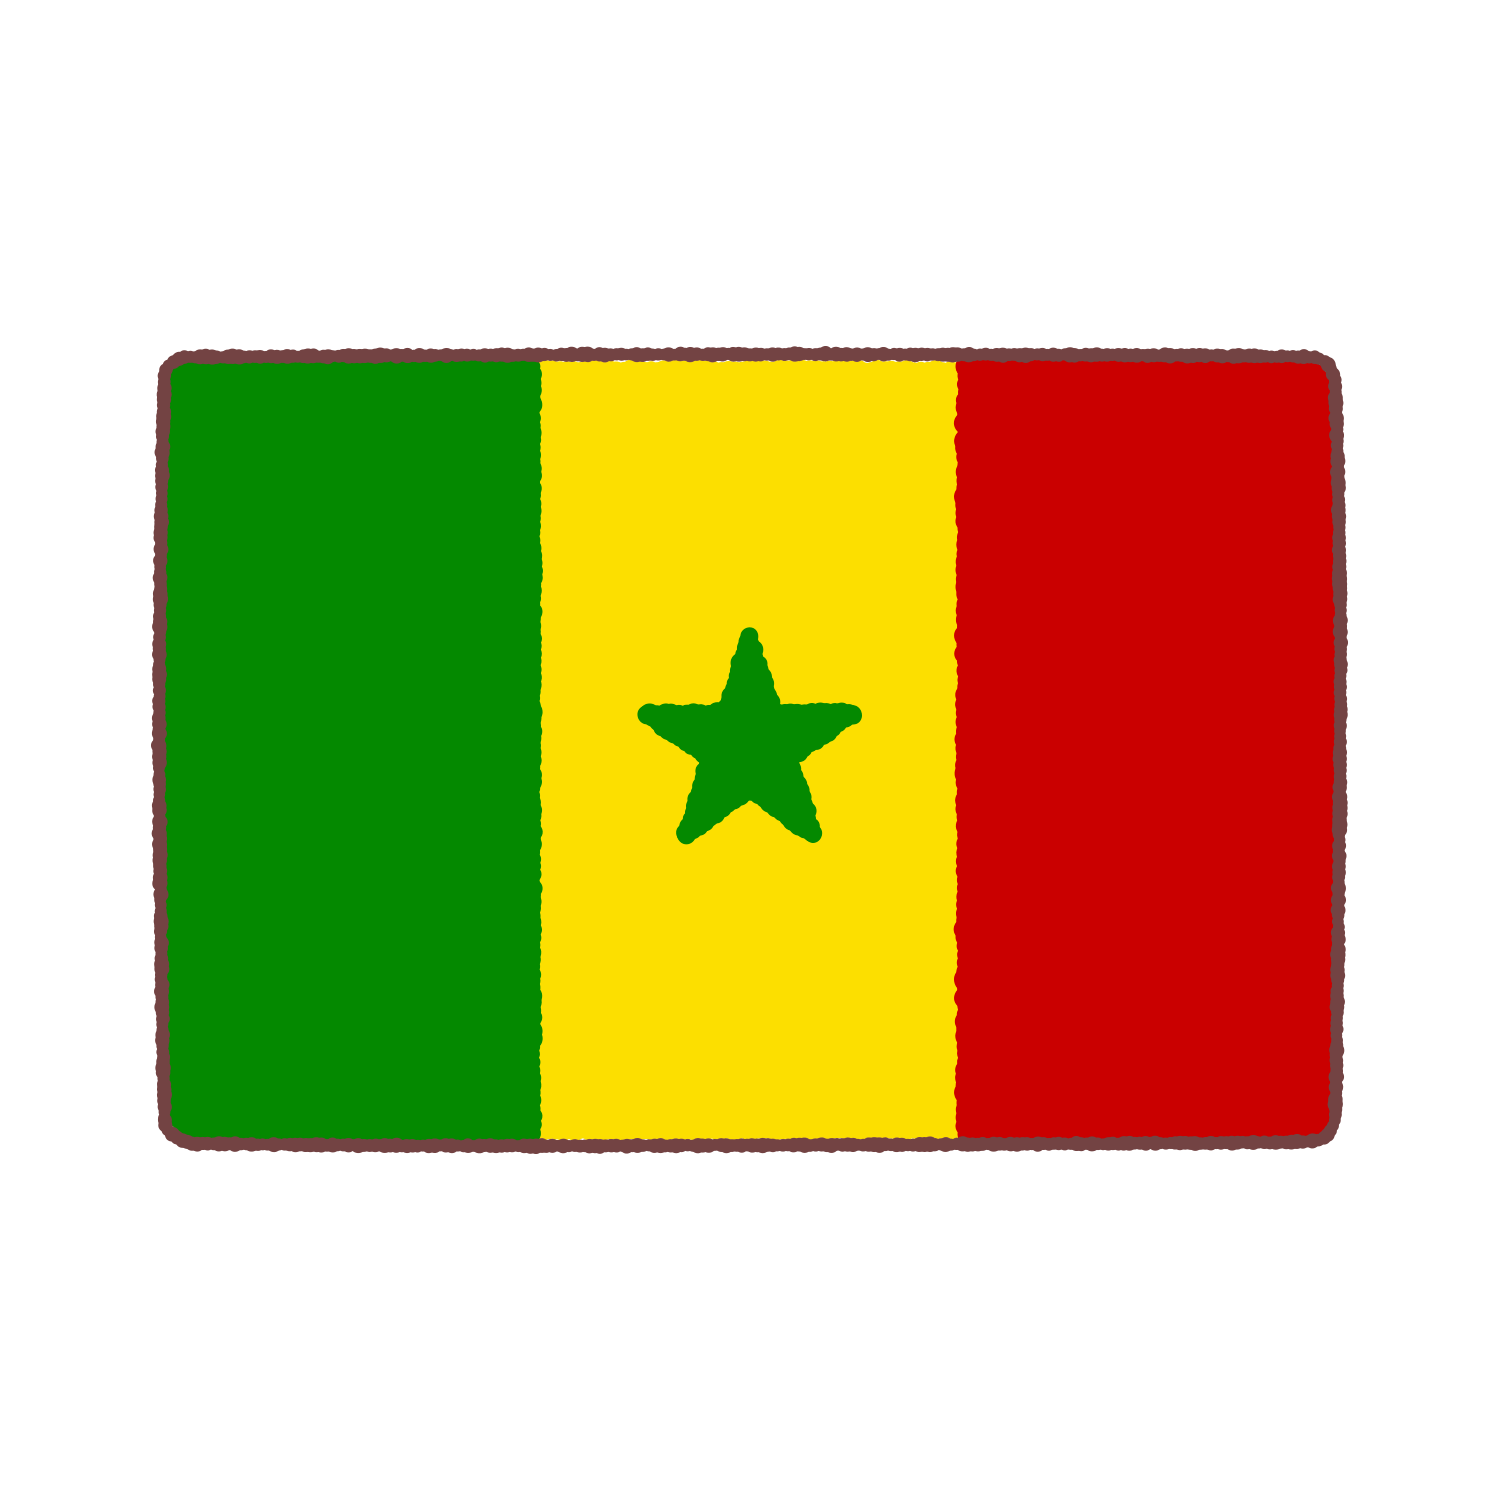 セネガル国旗のイラスト